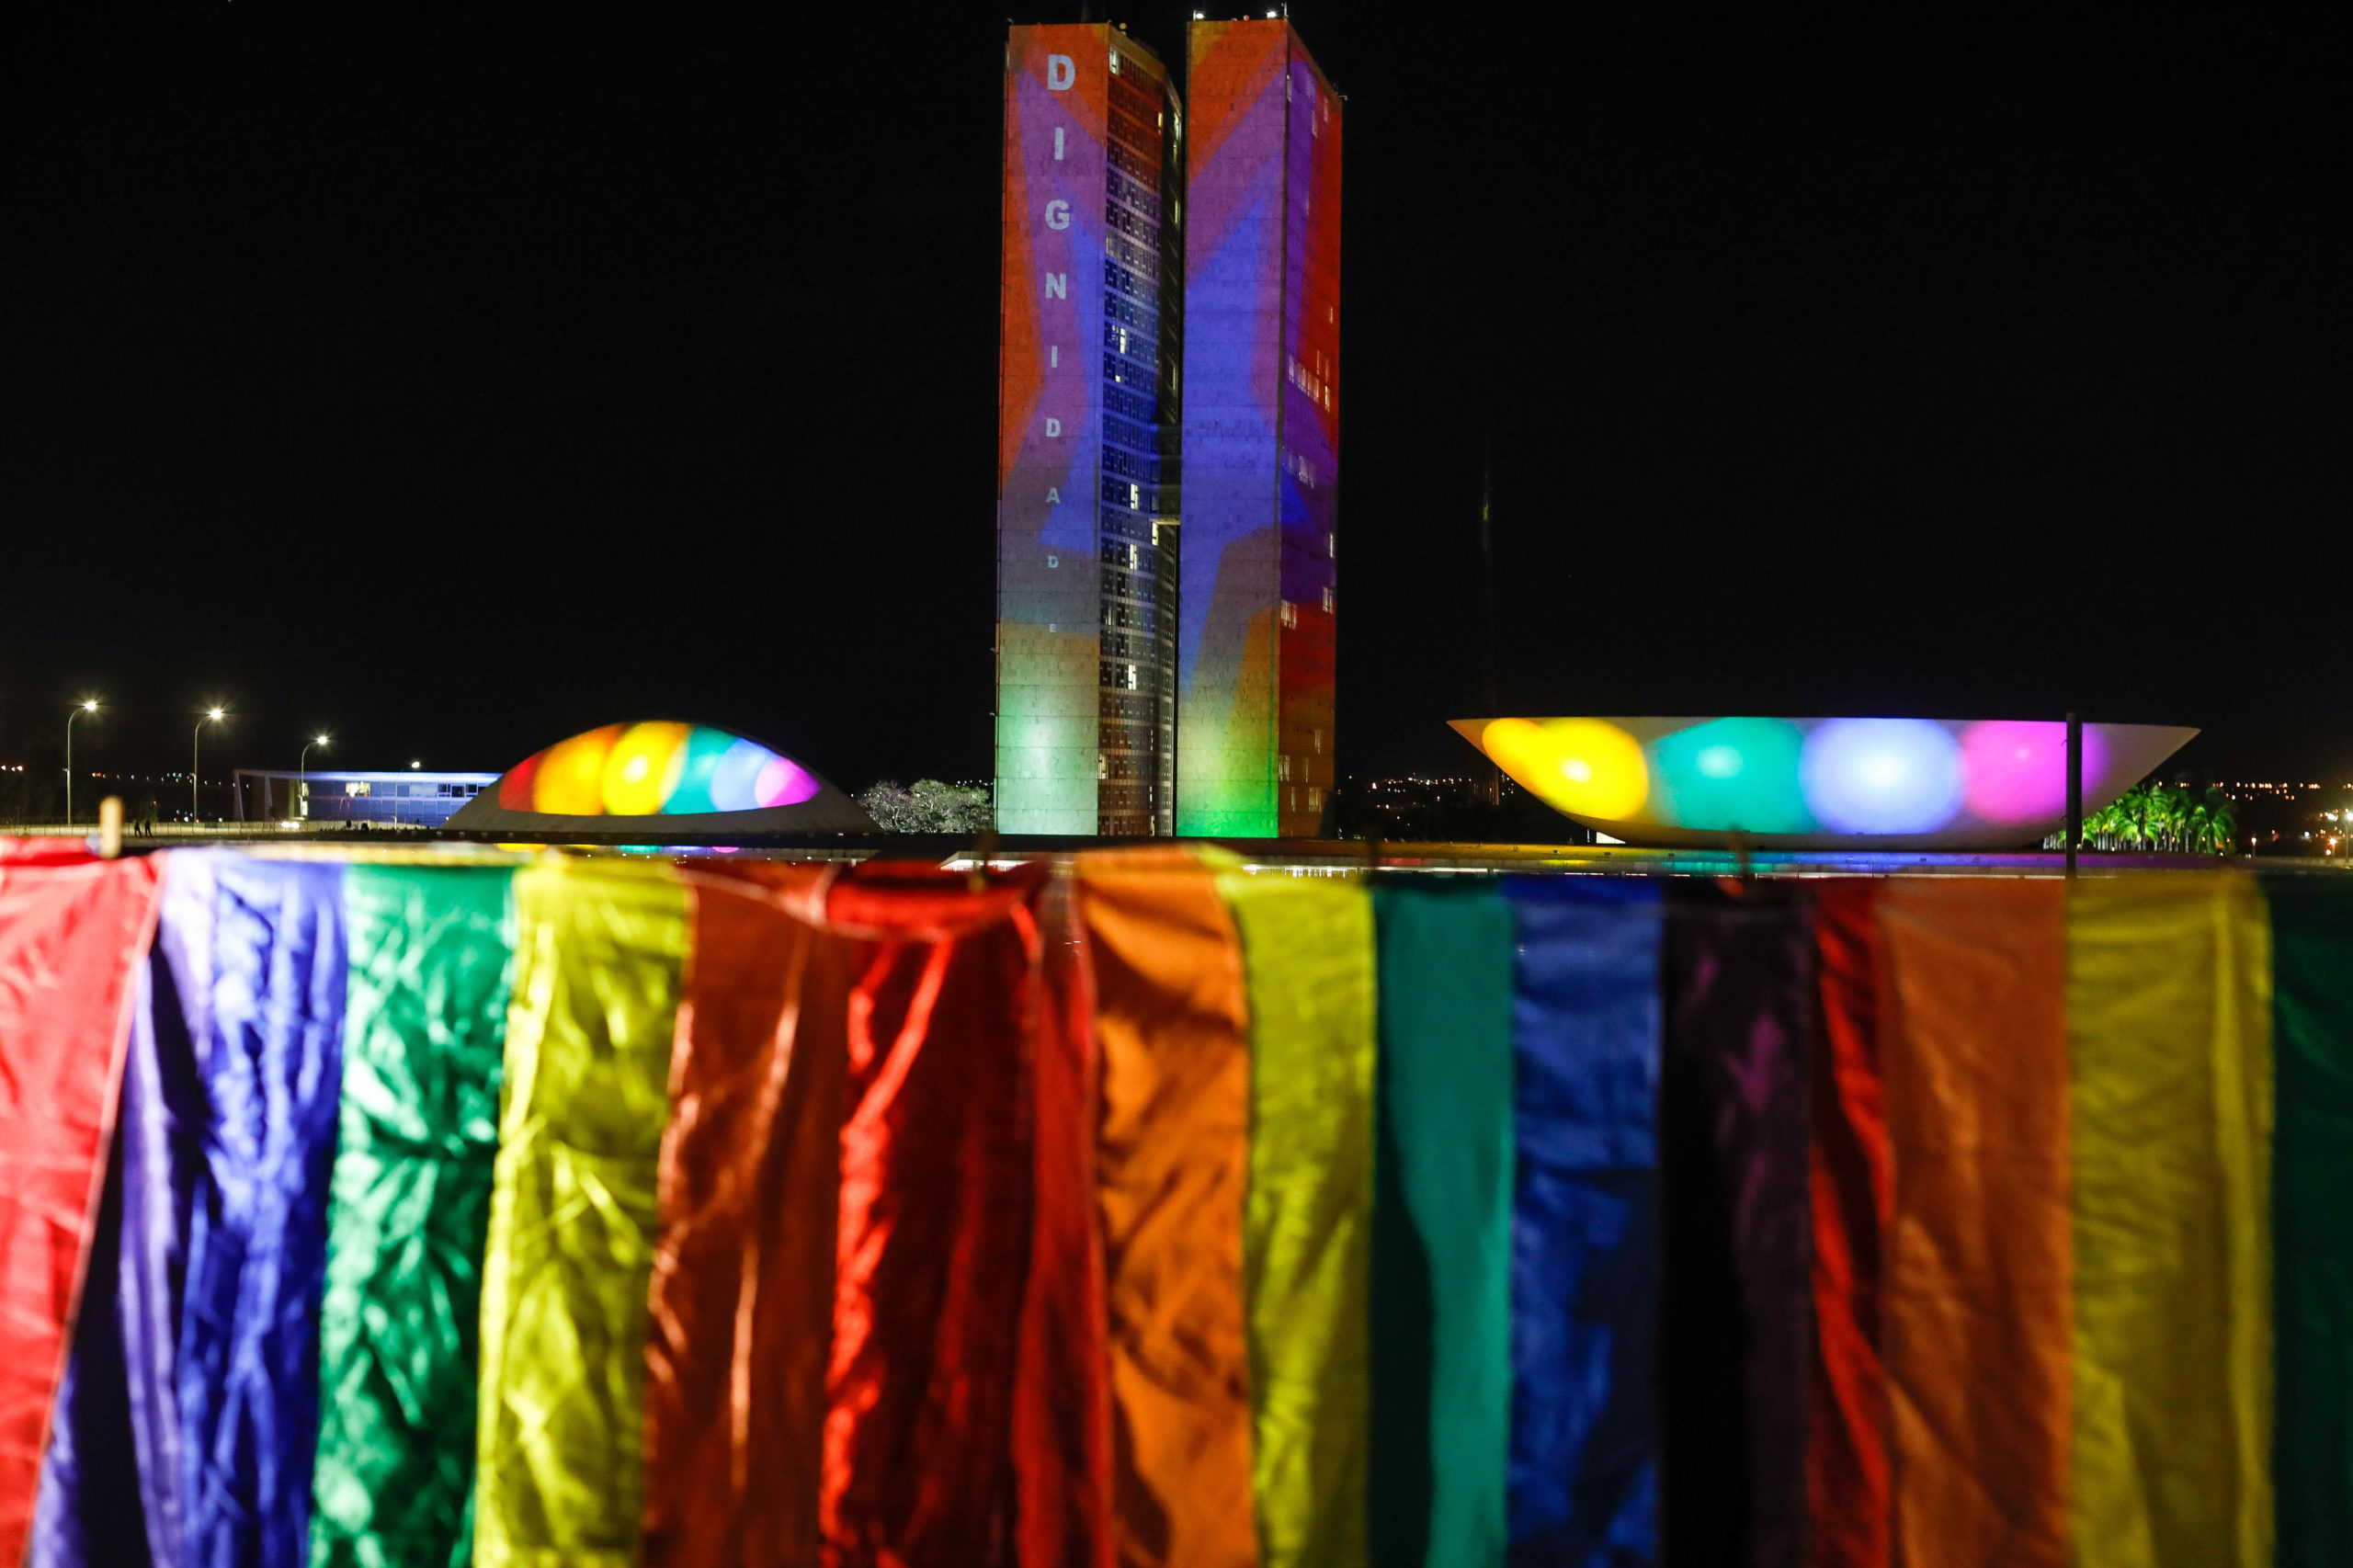 Casamento homossexual: pesquisa no Brasil diz que 45% apoiam e 39% são contra